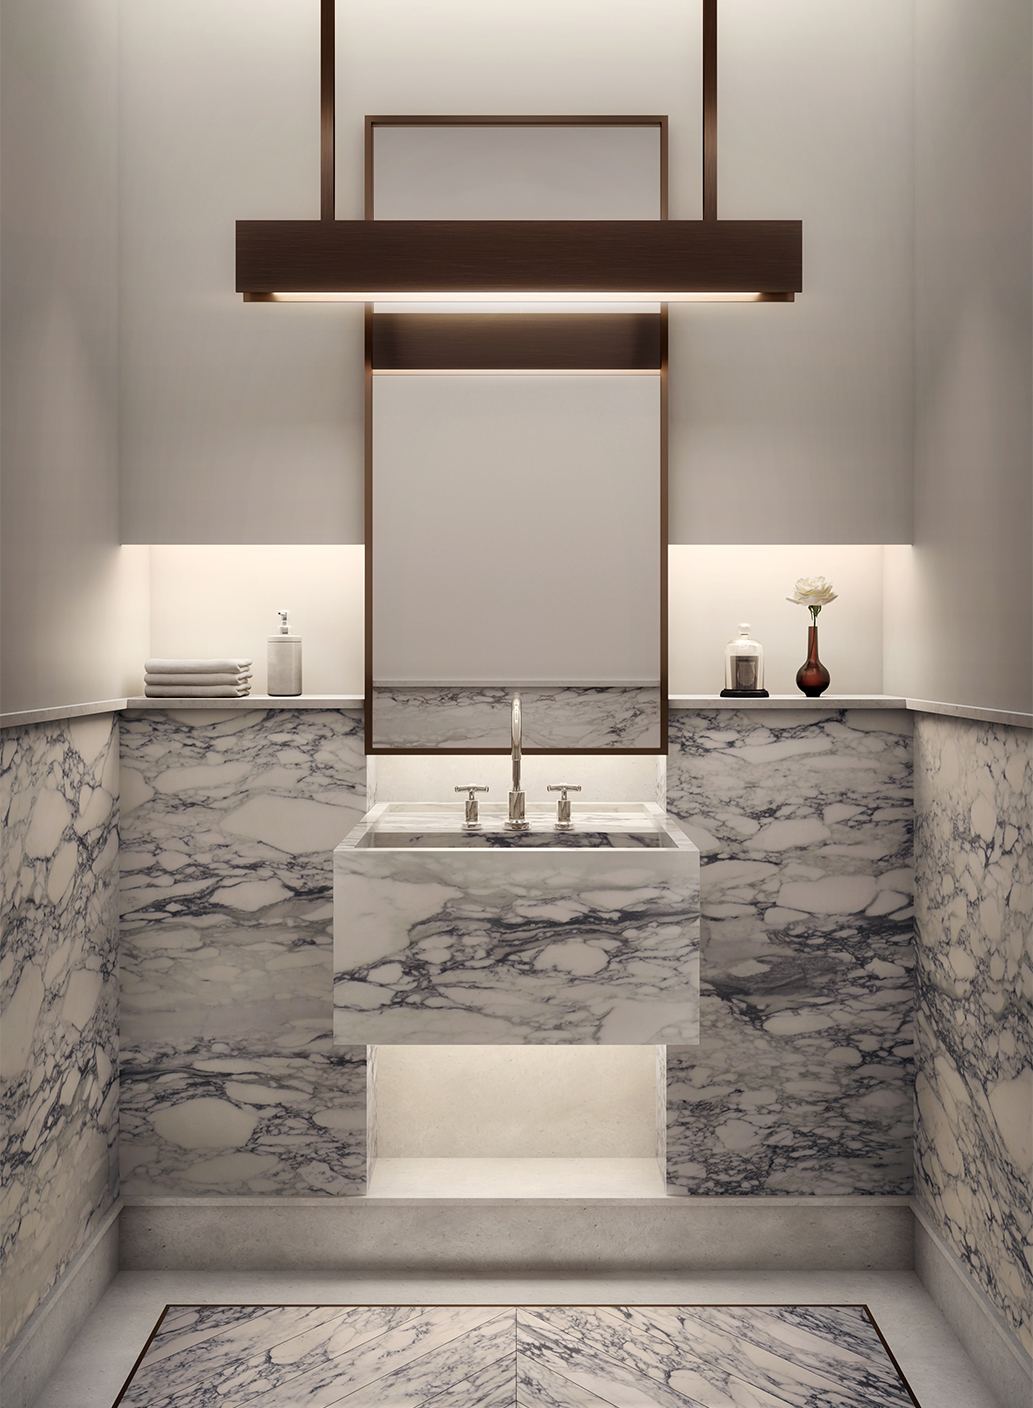 Luxurious bathroom vanity made of marble